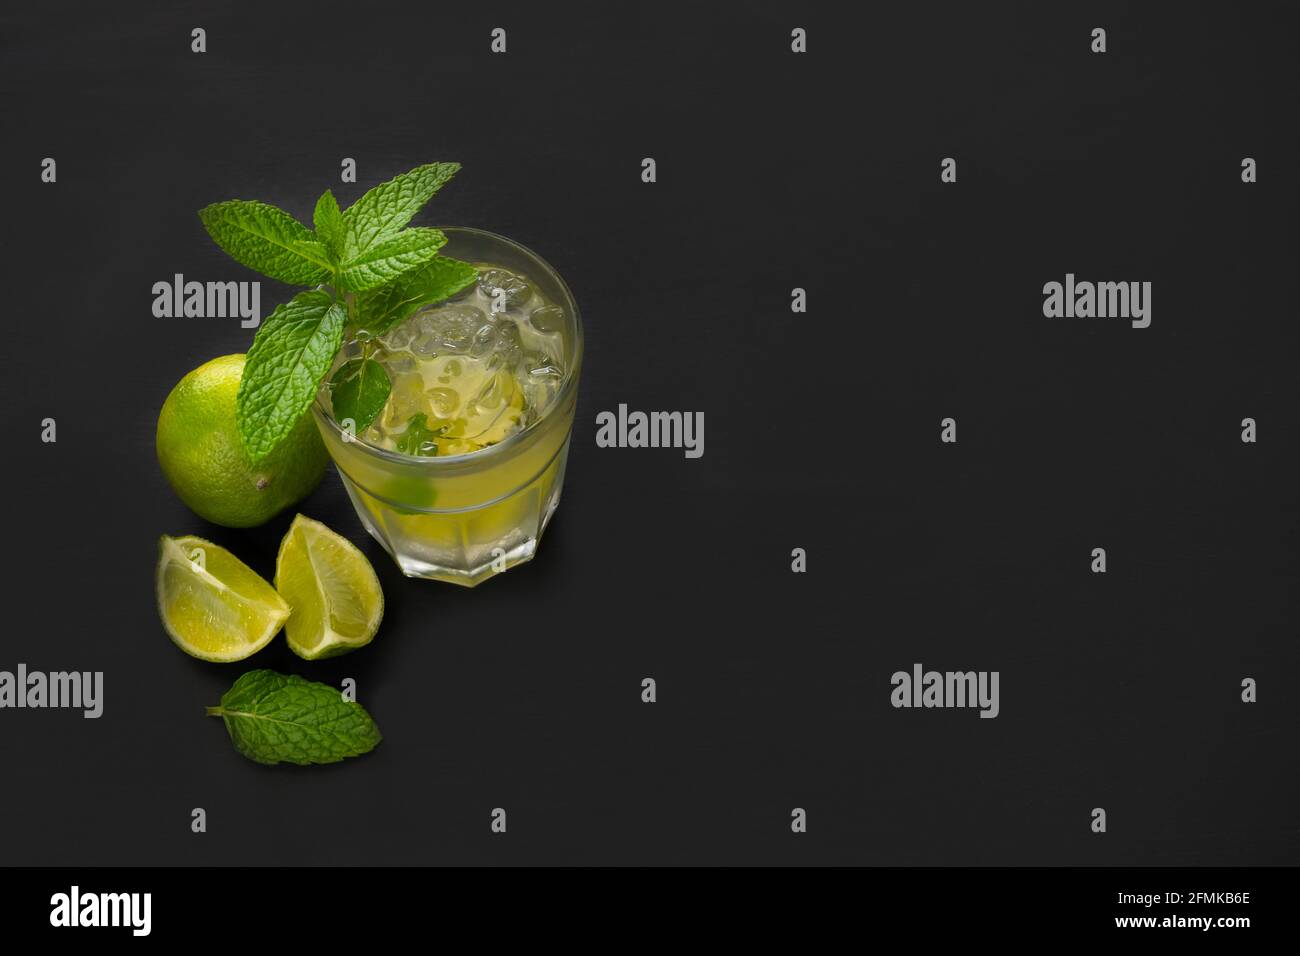 Vista dall'alto del cocktail mojito con lime verdi fresche e menta su sfondo scuro con spazio per la copia di testo o pubblicità. Foto Stock